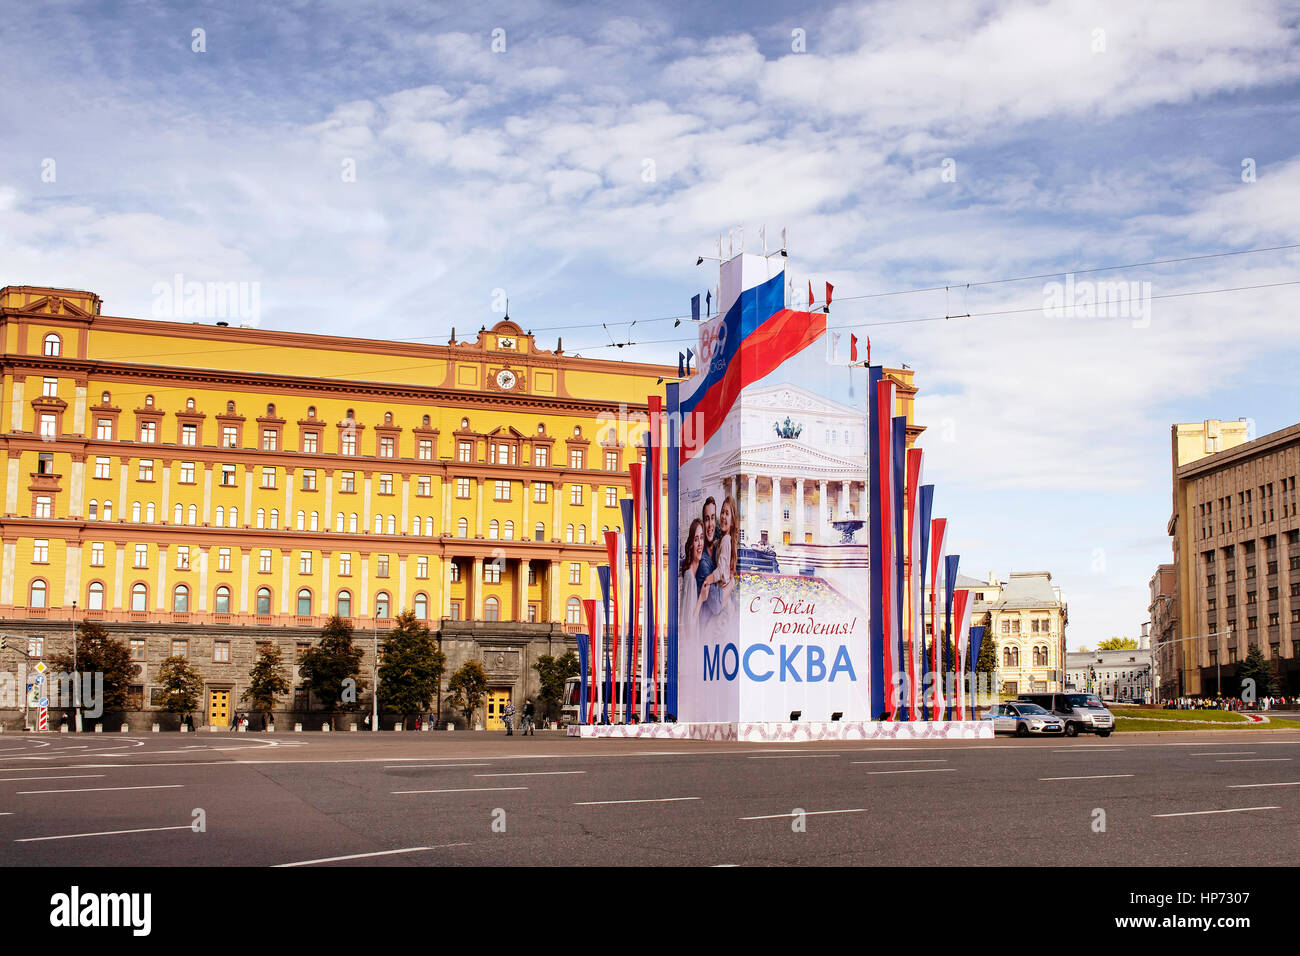 Vista di Lubyanka square. La sede centrale del KGB in Russia è in background. Advertisiment di Moscow City giorno è posto nel mezzo dell'area. Foto Stock